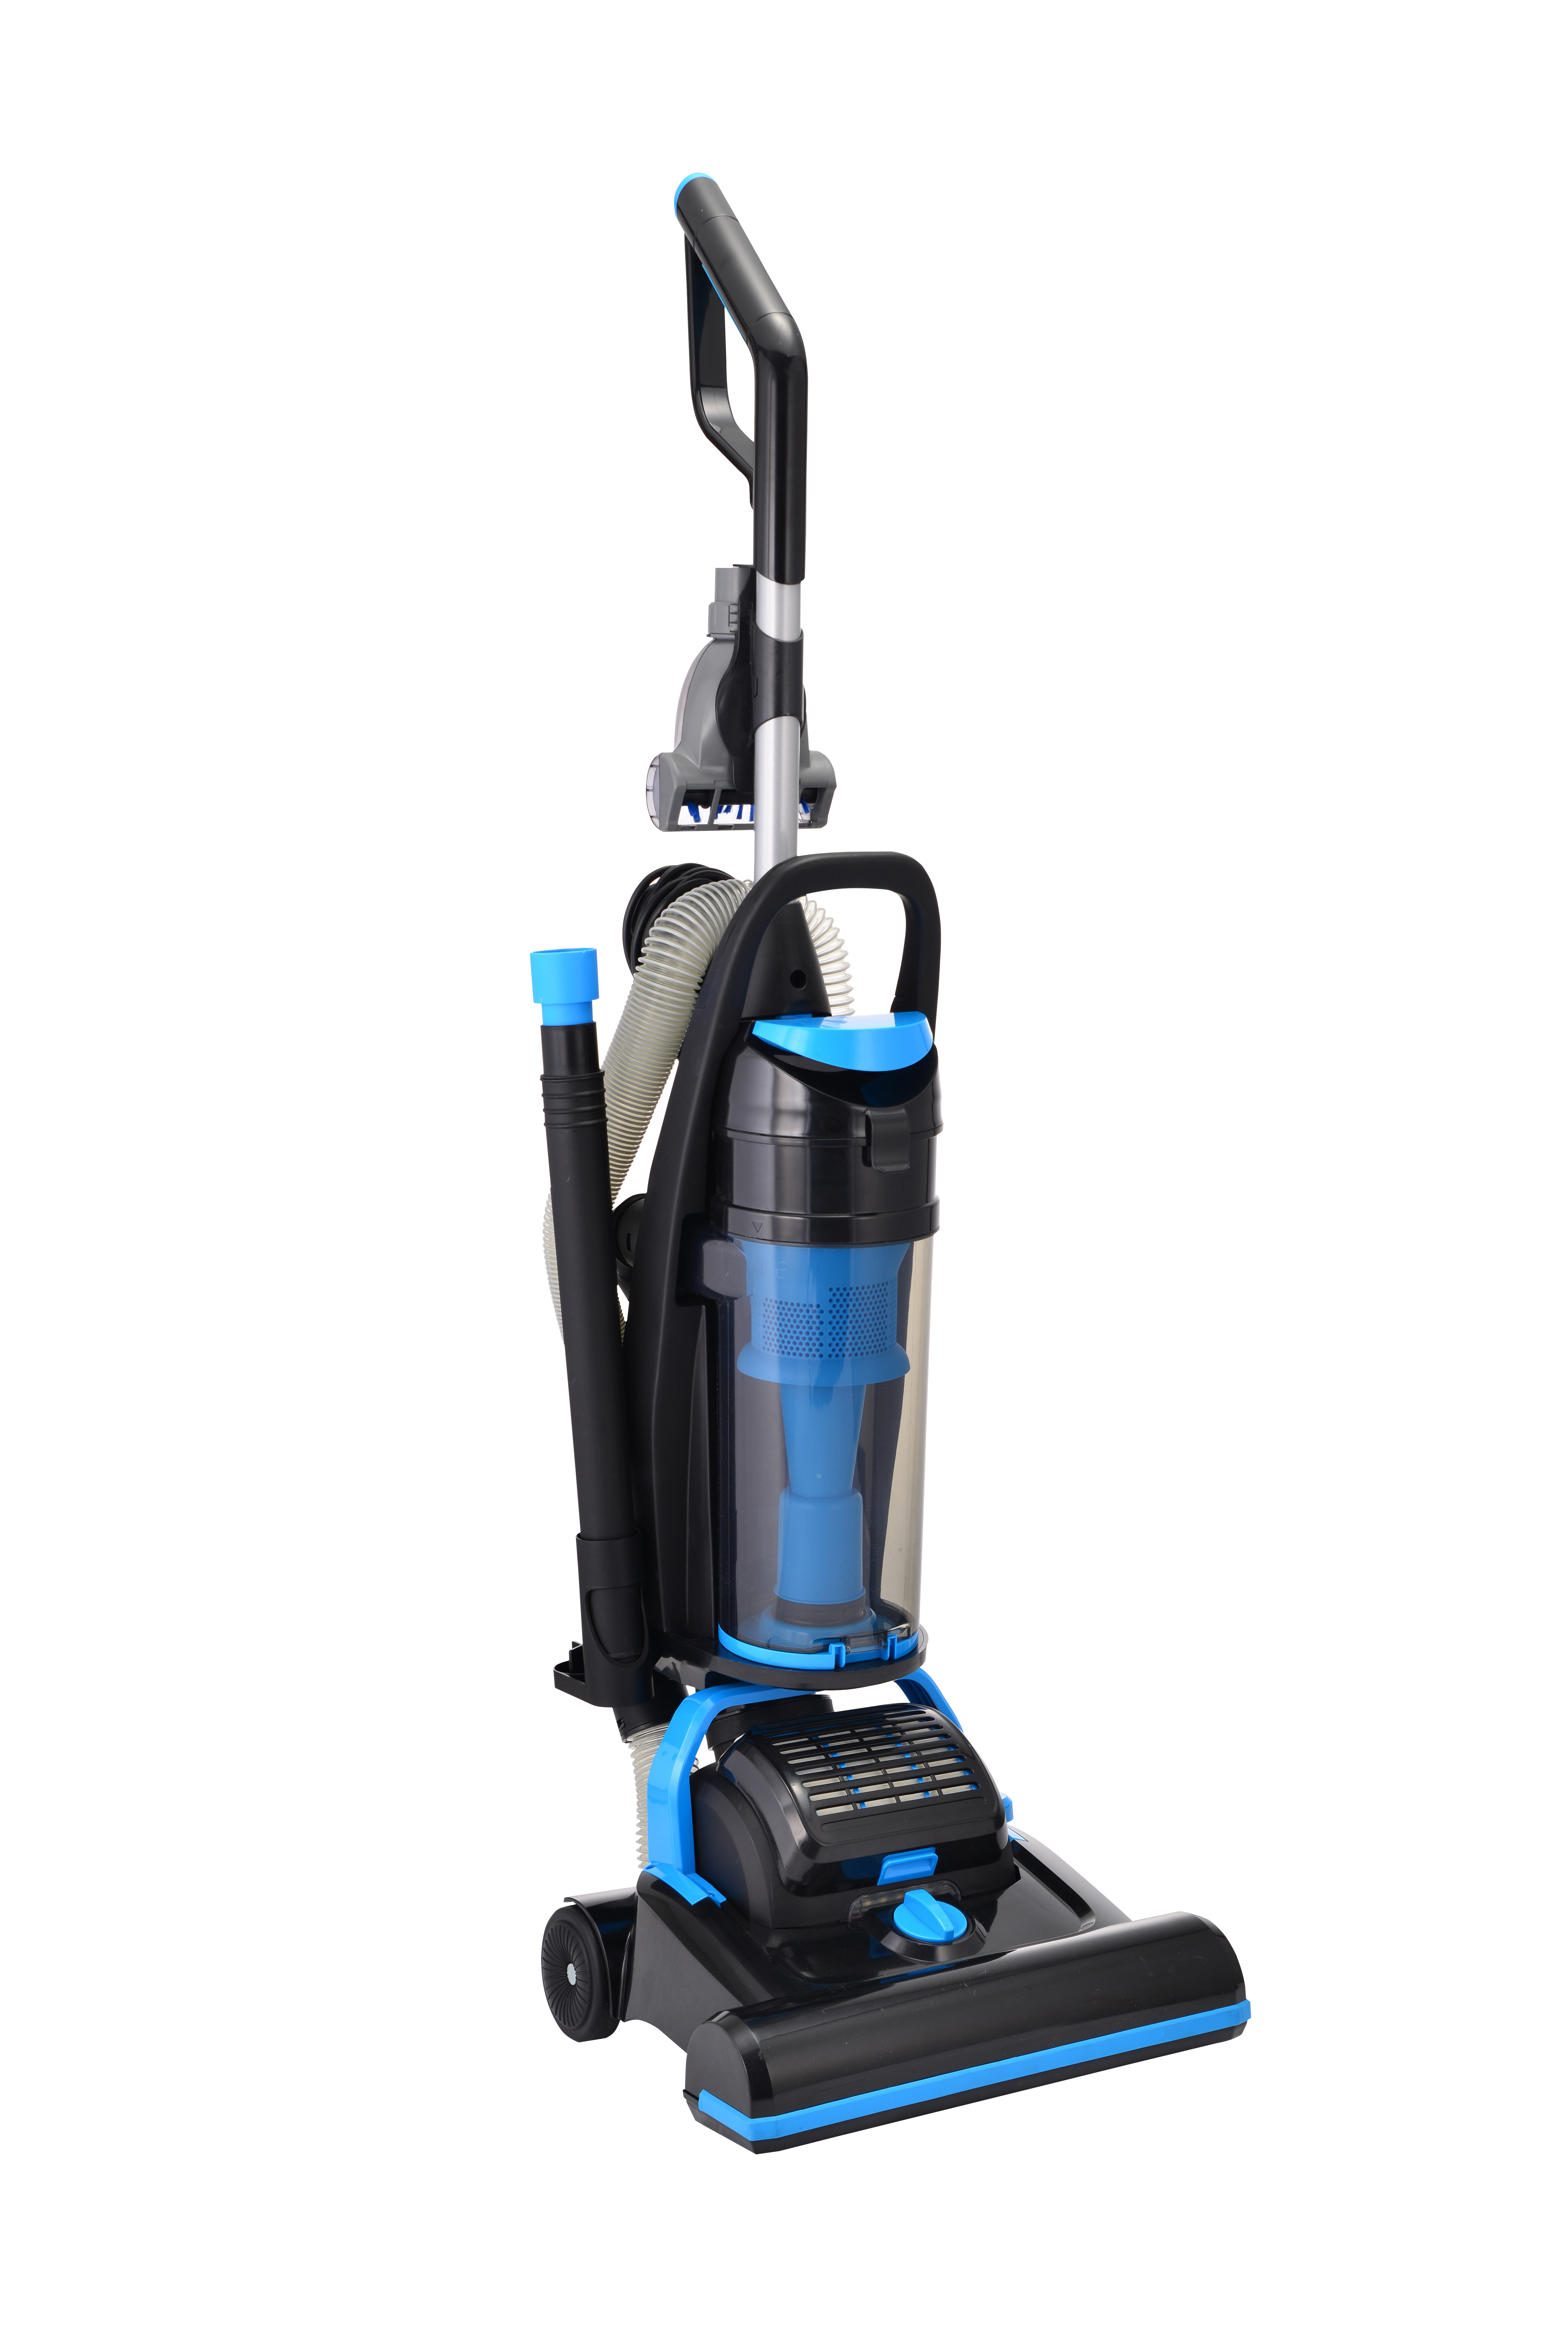 CJ99G Upright Bagless Vacuum Cleaner